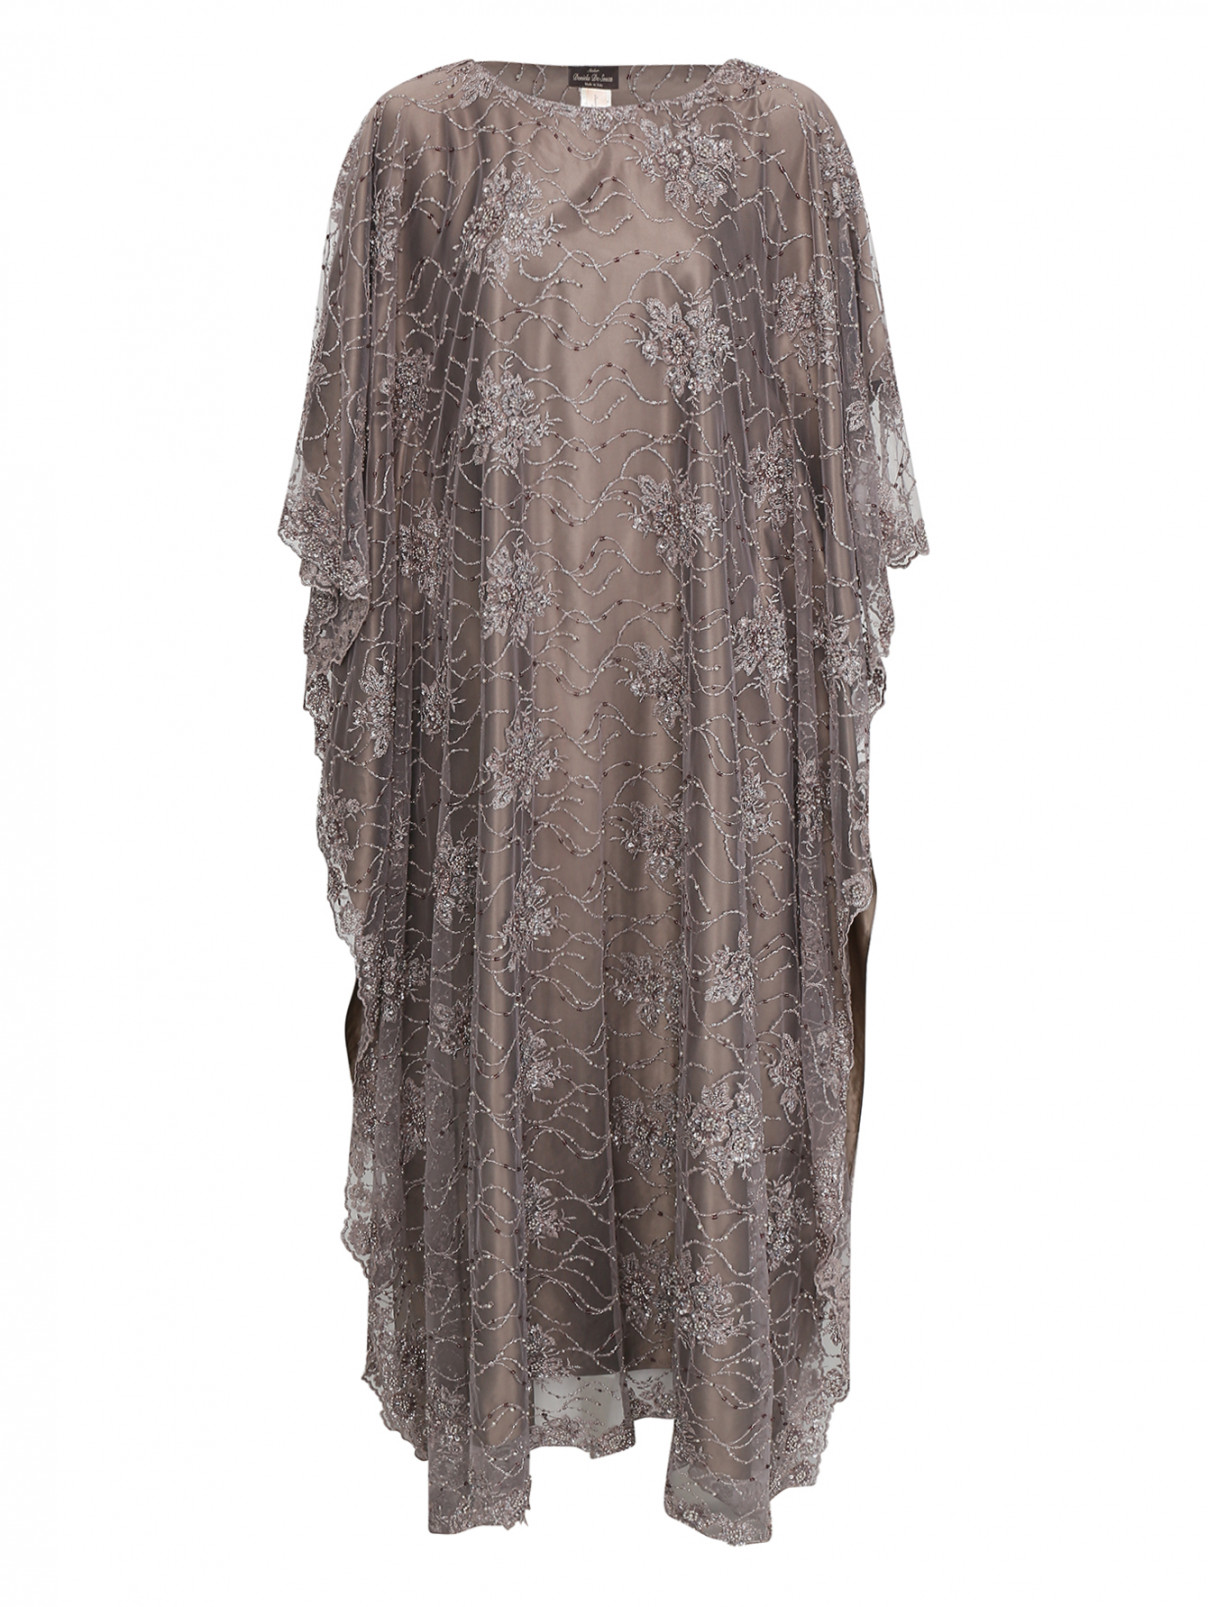 платье-макси  из сетки с вышивкой бисером Daniela de Souza  –  Общий вид  – Цвет:  Серый